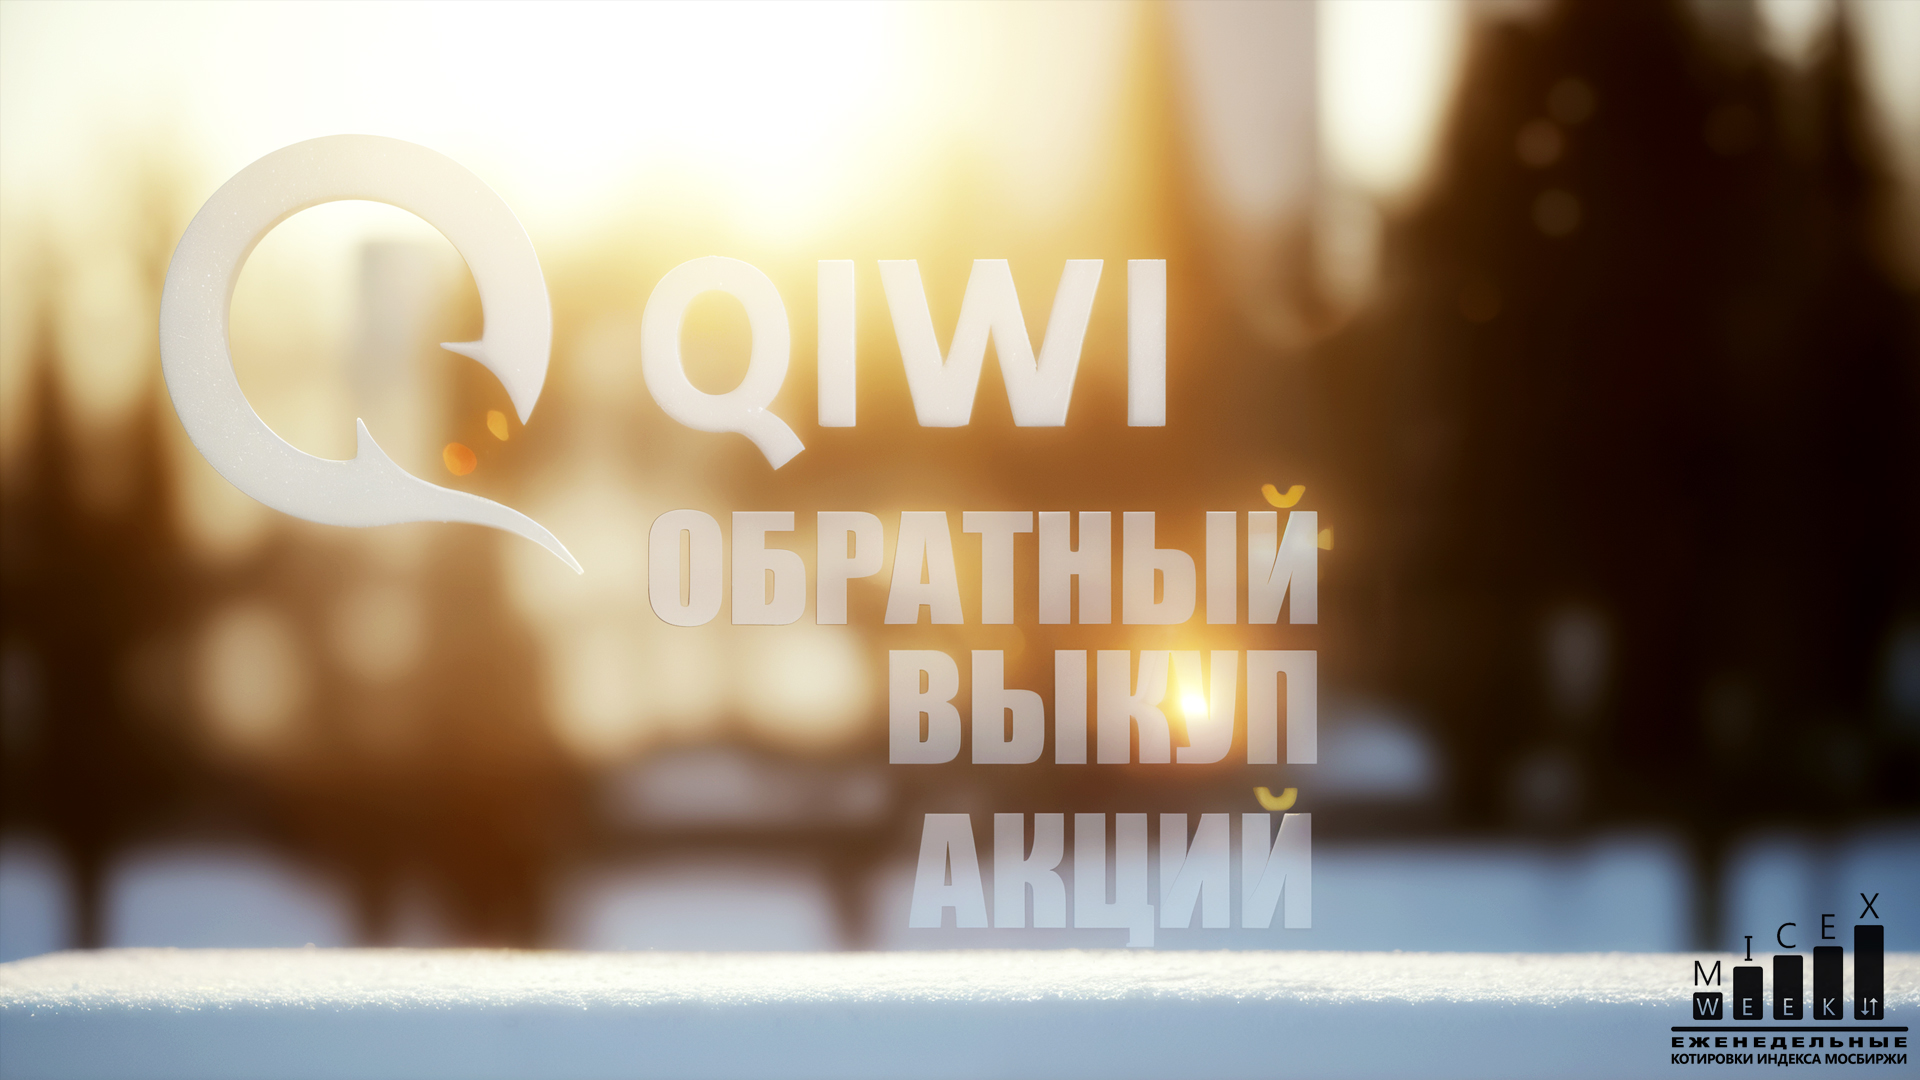 QIWI - ОБРАТНЫЙ ВЫКУП АКЦИЙ. Индекс МосБиржи за 3 неделю